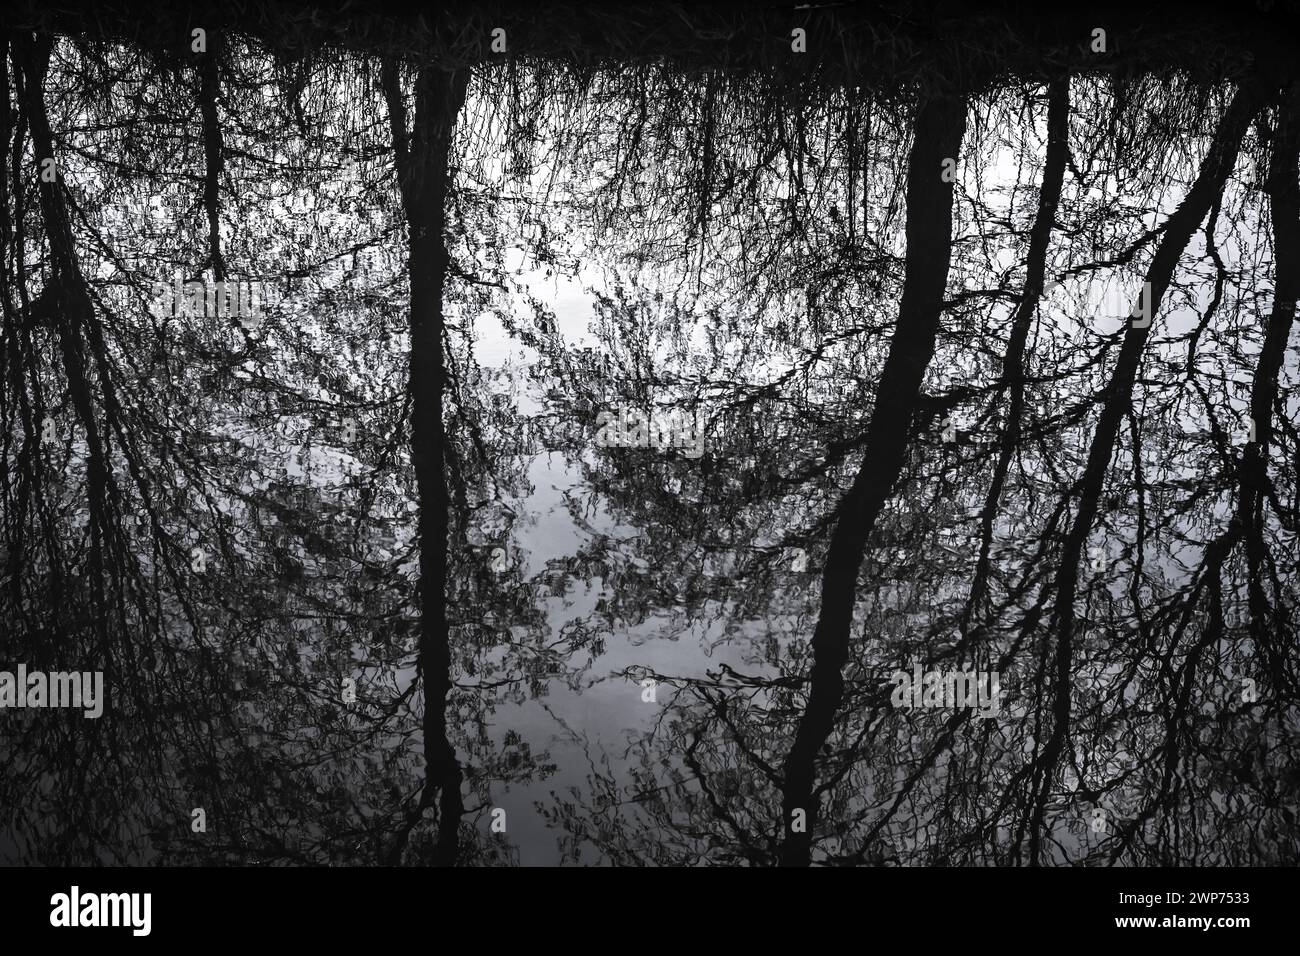 Sich spiegelnde Bäume in einem Entwässerungsgraben in Kirchwerder, Hamburg, Deutschland Stock Photo